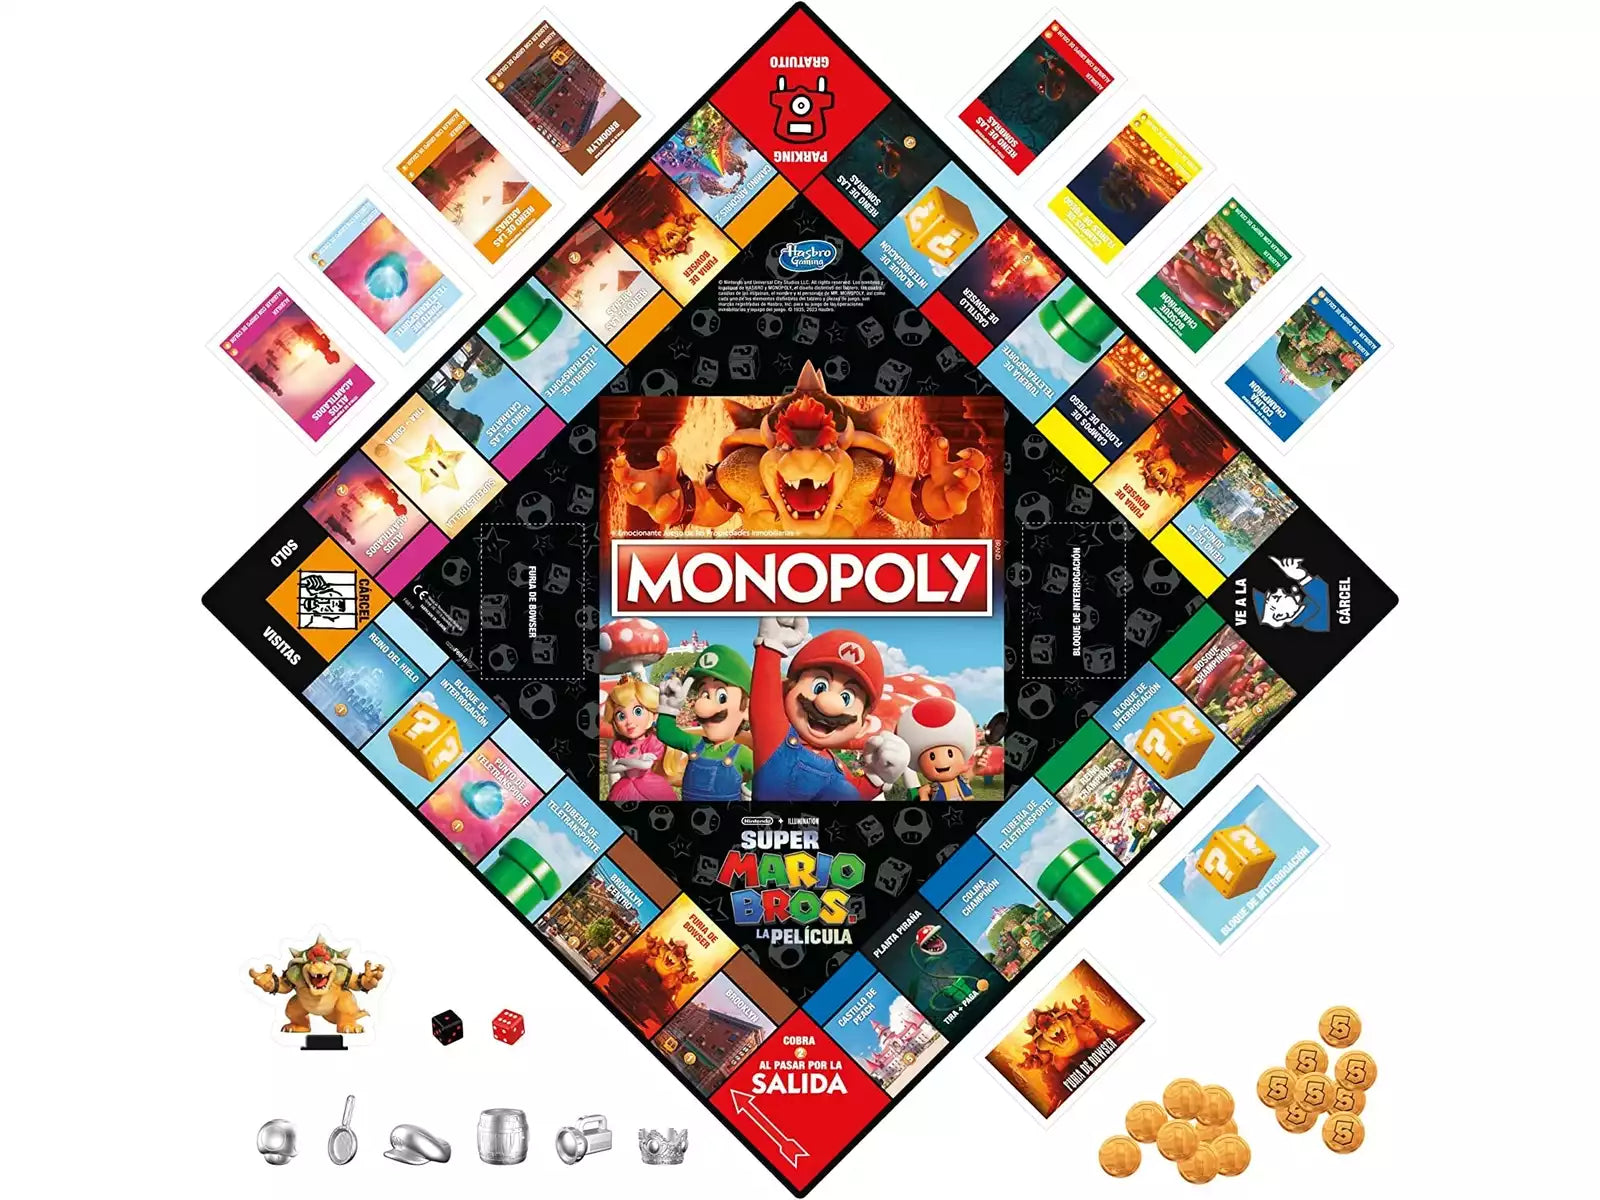 Monopoly: Super Mario Bros La Pelicula